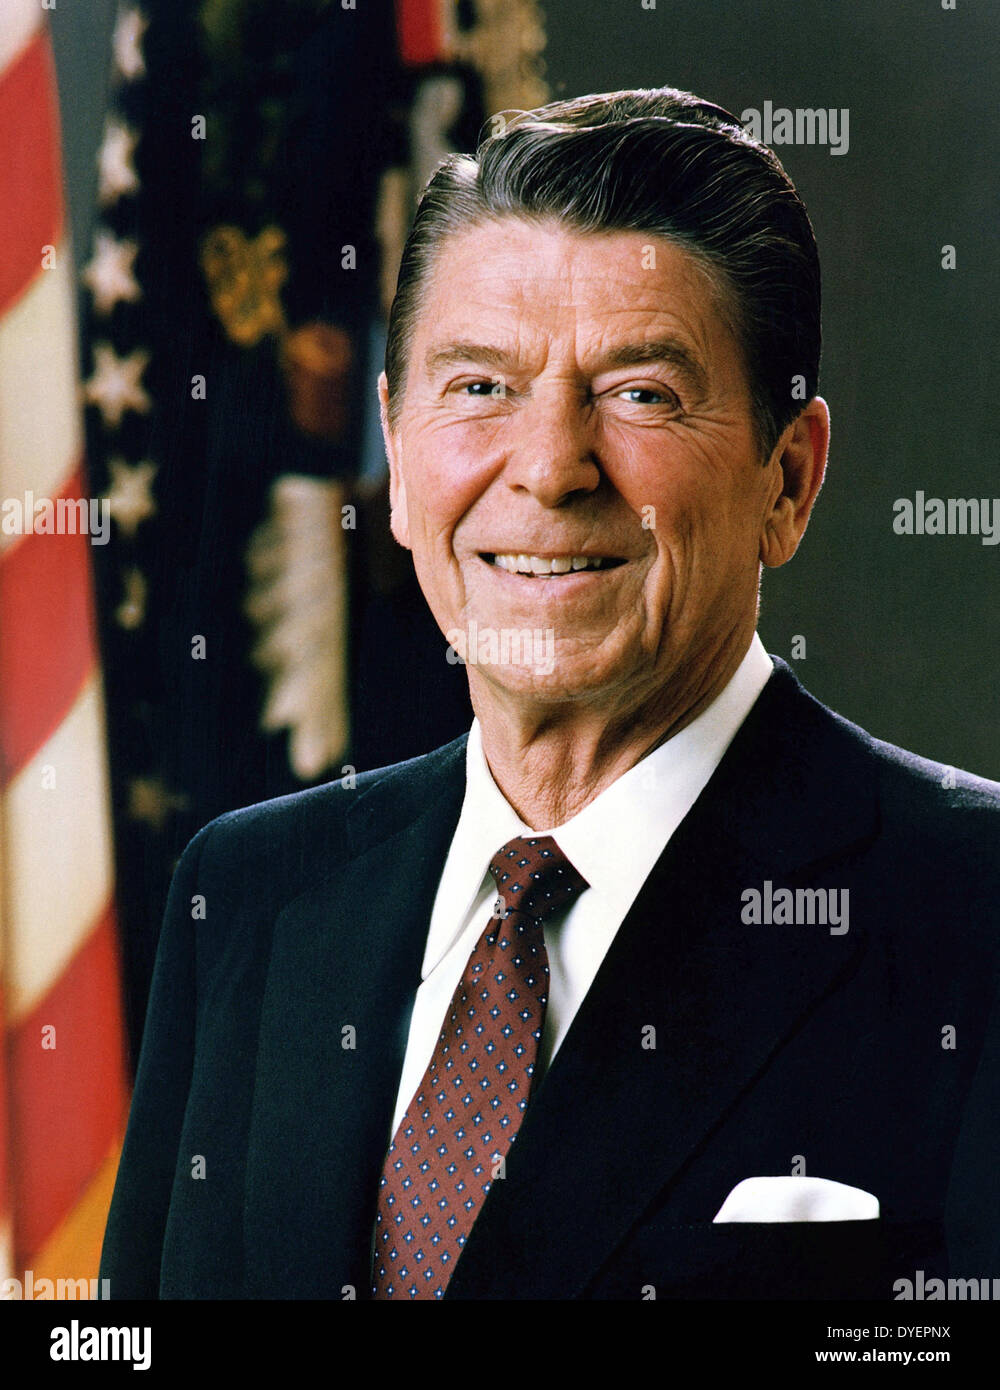 Ronald Reagan 1911-2004. 40e président des États-Unis. 1981-1989. Avant sa présidence, il a été le 33e gouverneur de la Californie, et a été d'une radio, d'un acteur de cinéma et de télévision. Banque D'Images